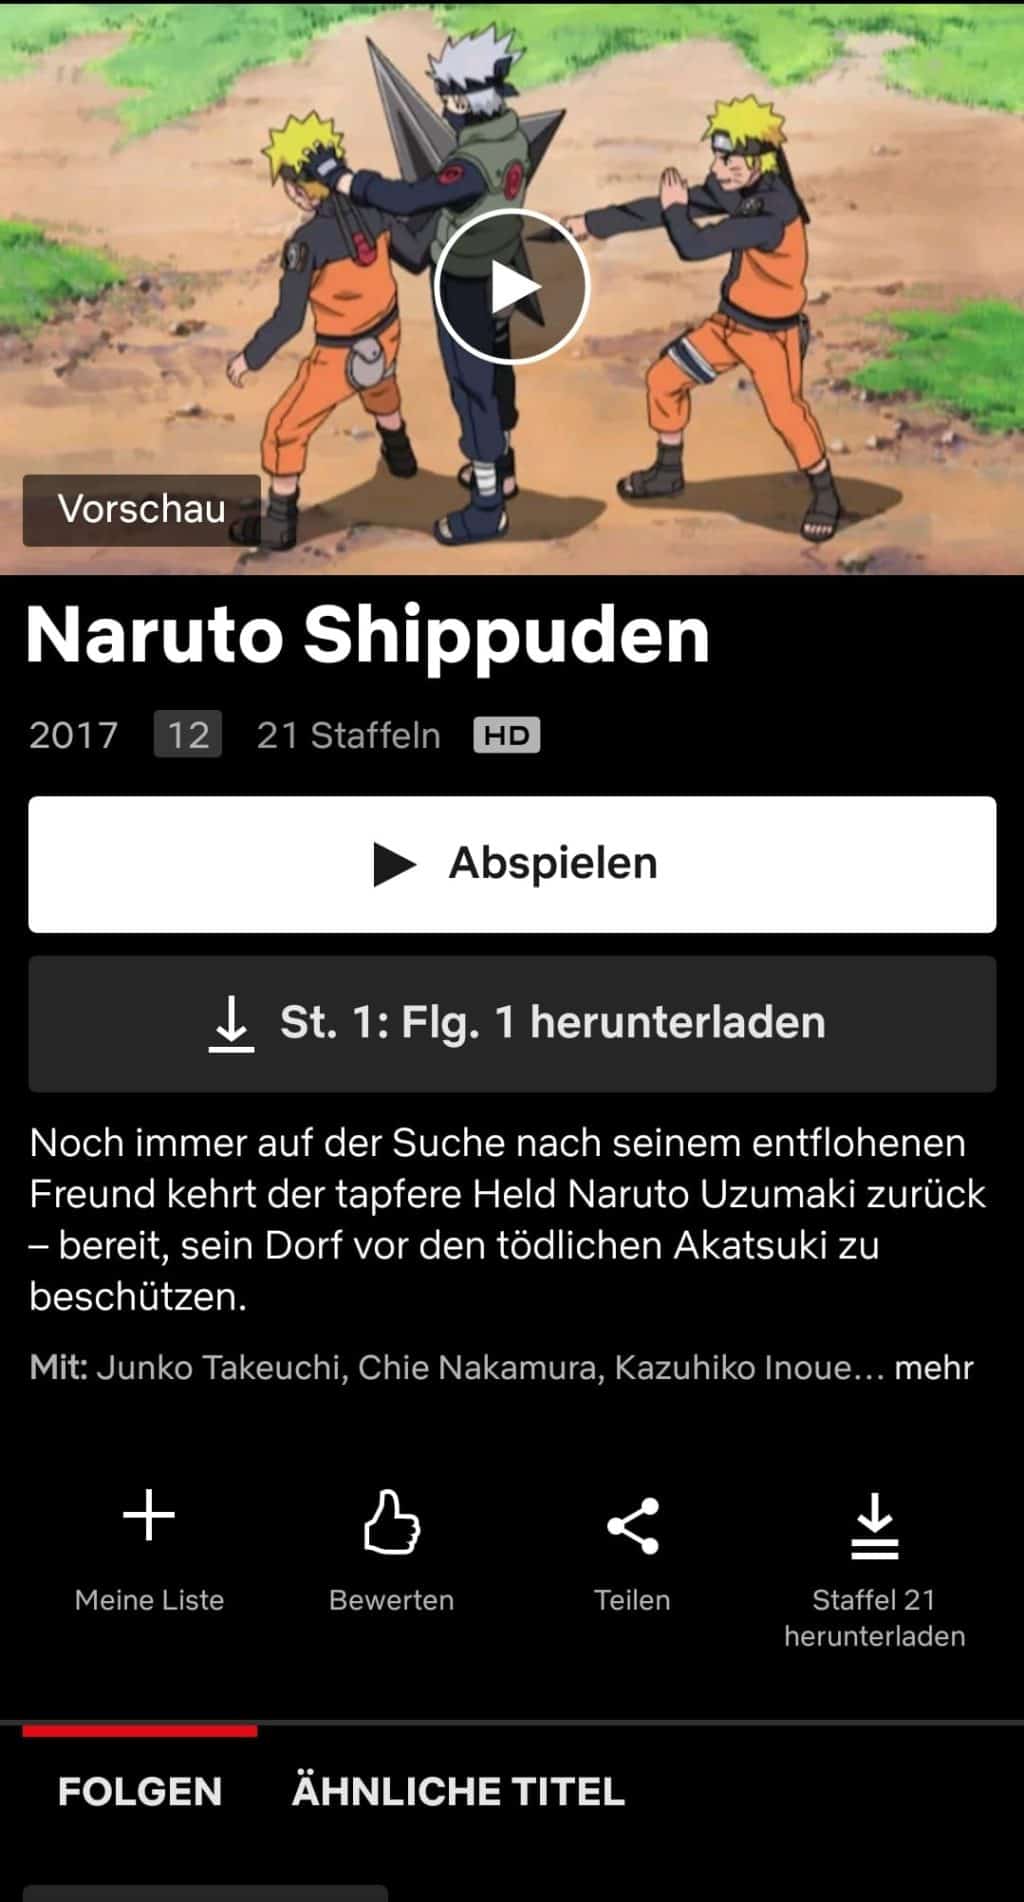 Naruto shippuden netflix